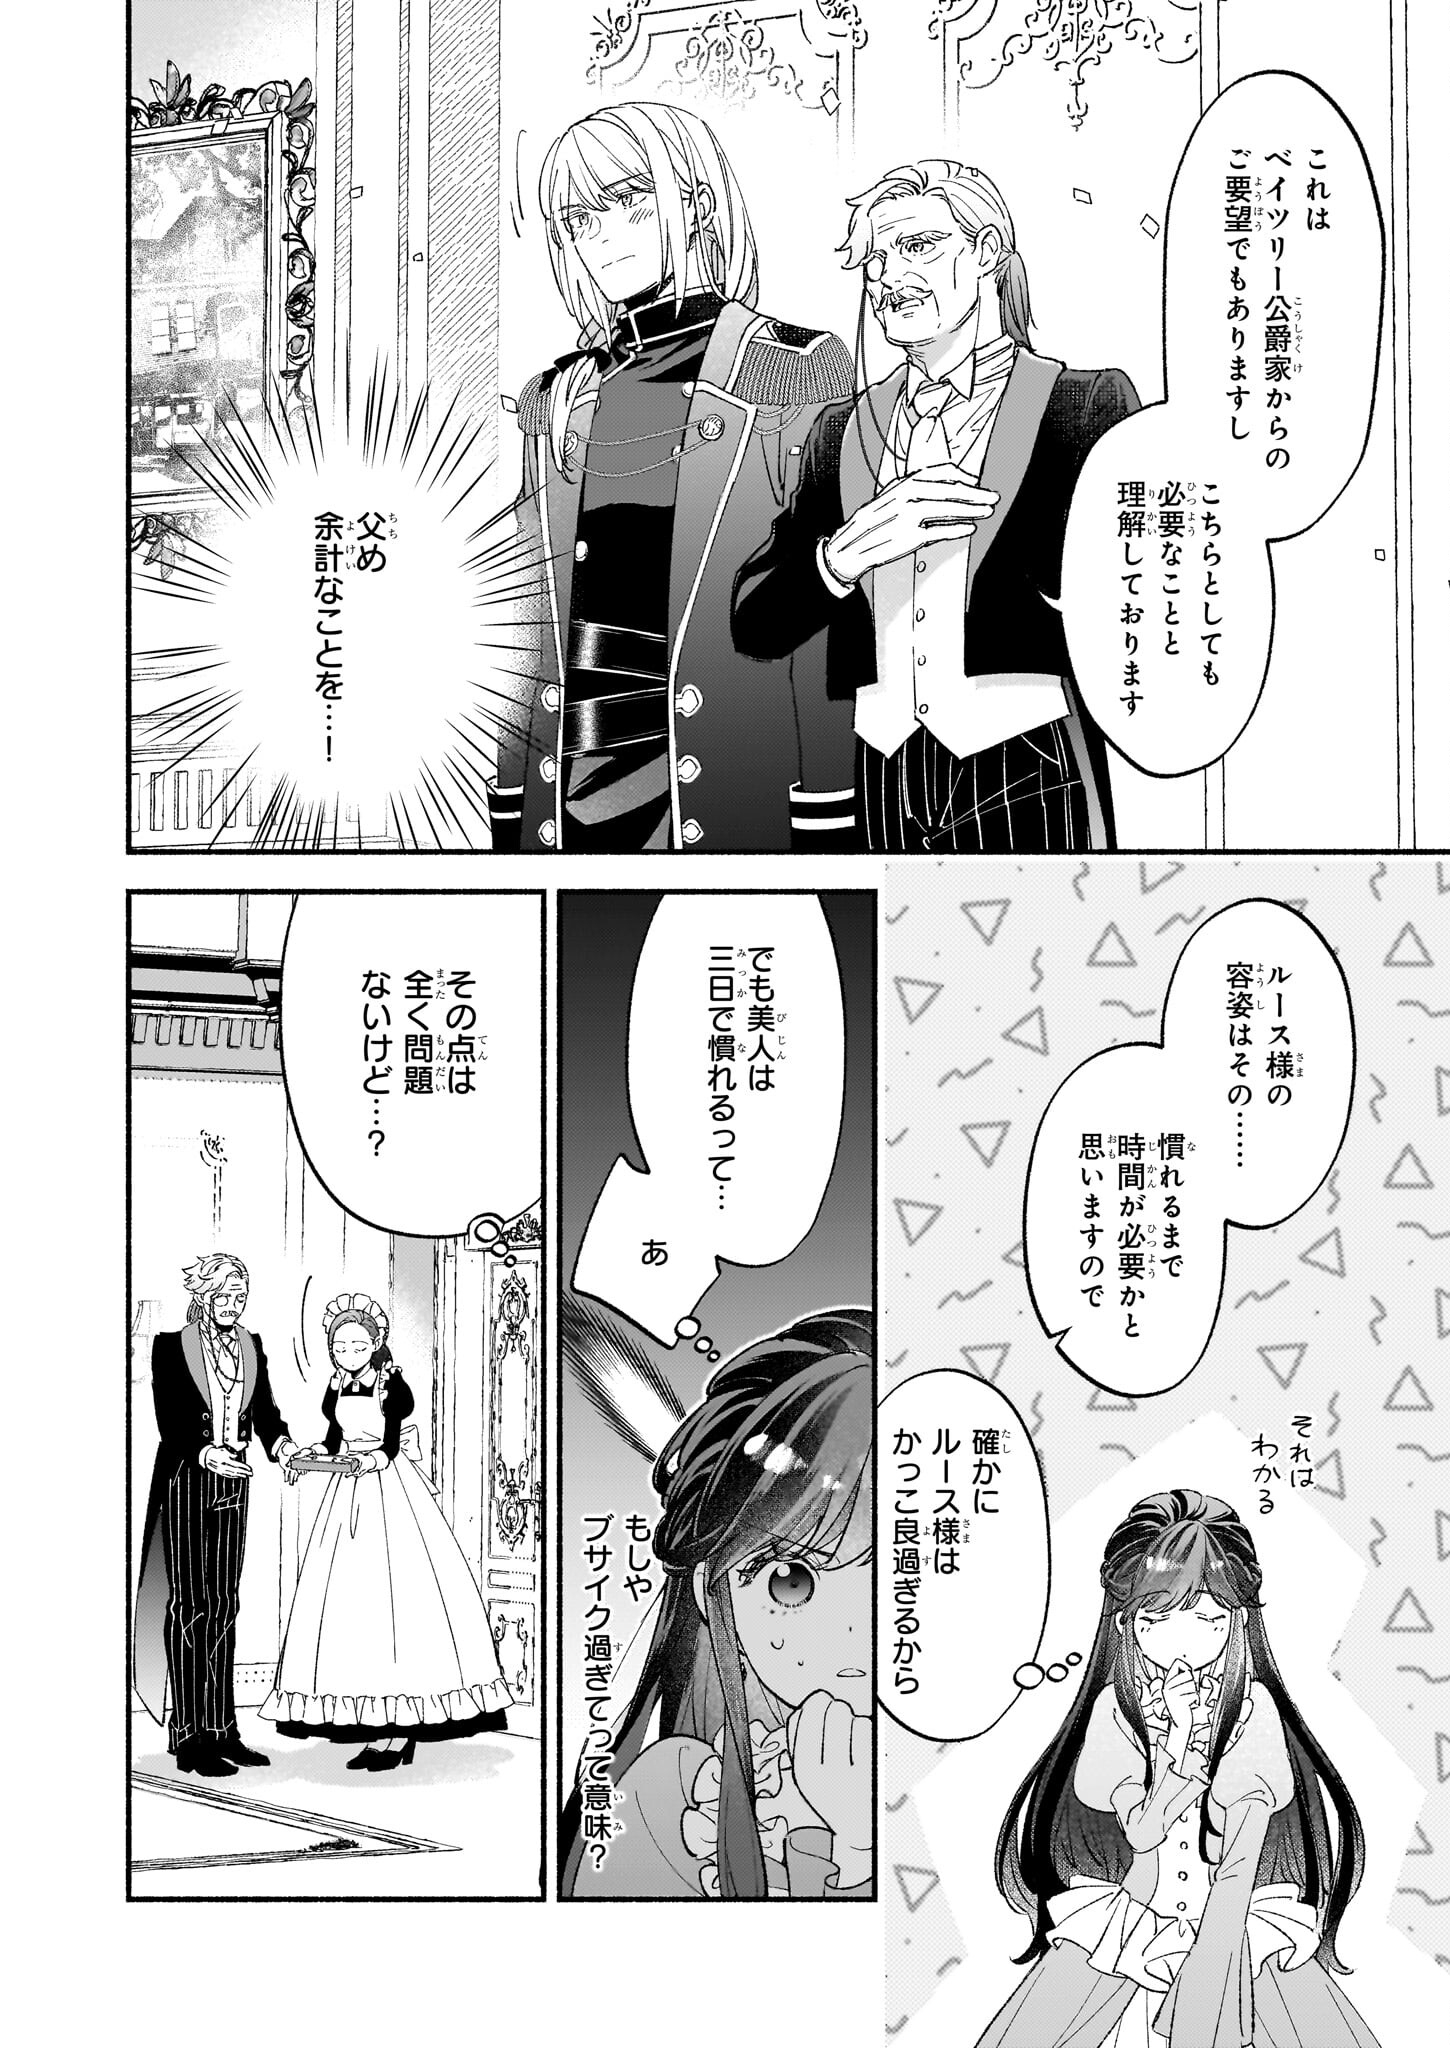 Suitei Akuyaku Reijou wa Koku Ichiban no Busaiku ni Totsugasareru you desu - Chapter 6 - Page 2